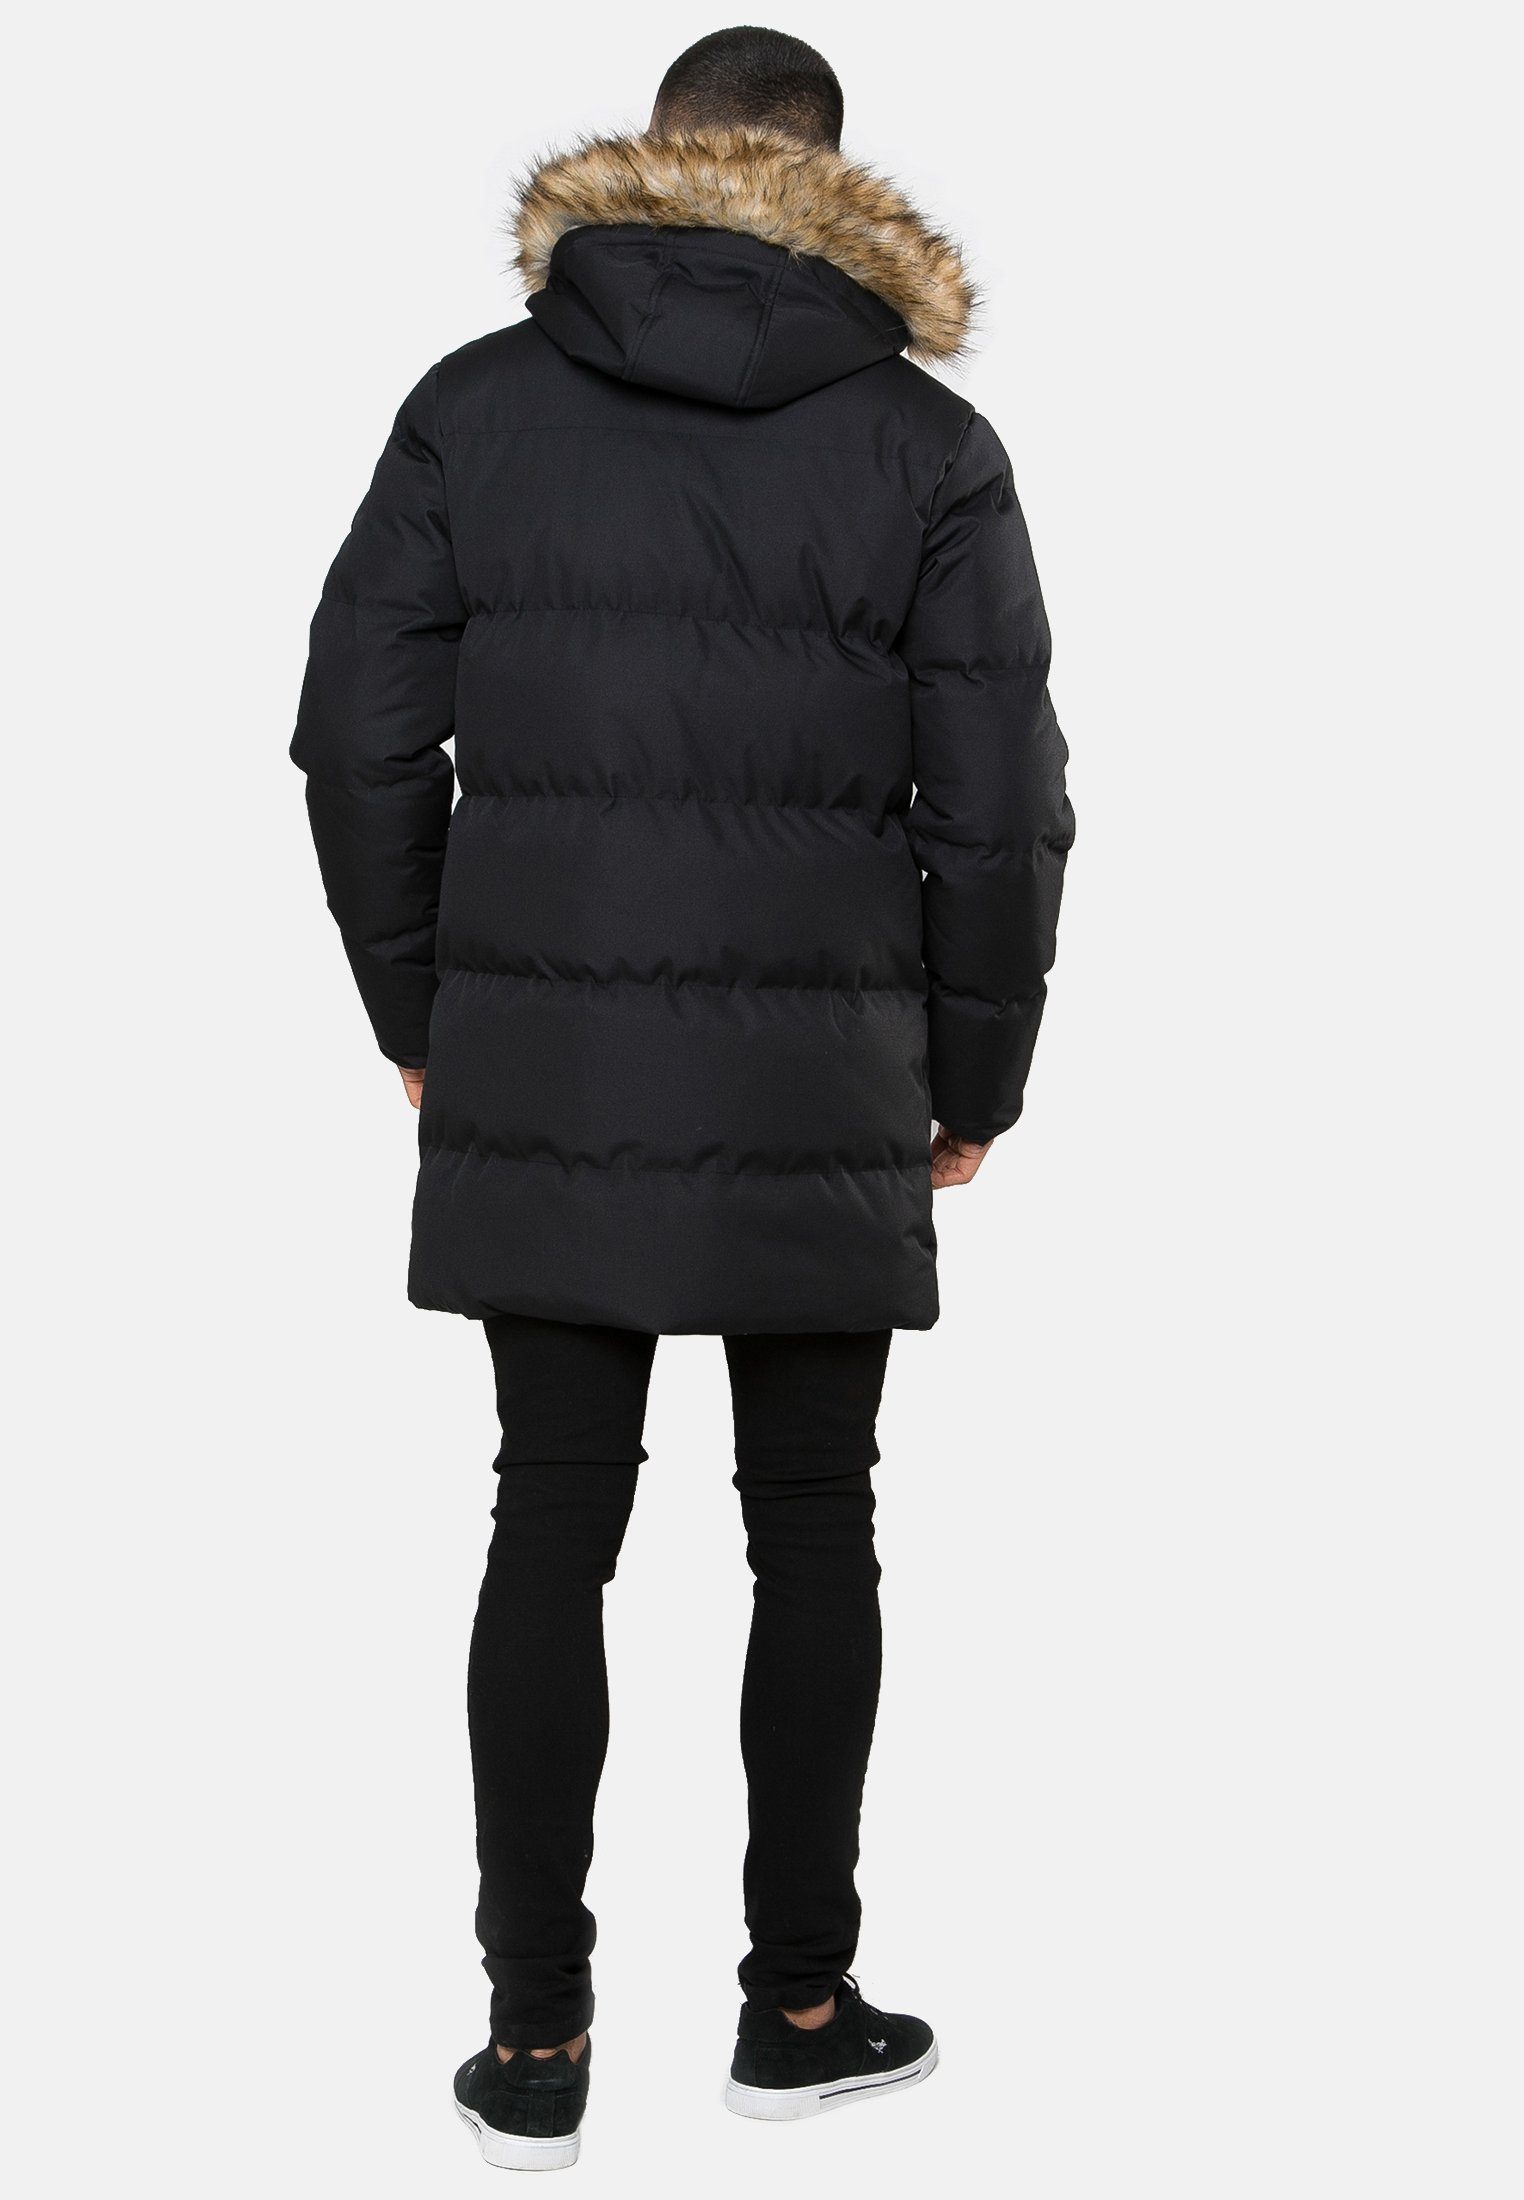 Recycled Threadbare schwarz (GRS) Black- Renfield Padded Longline Winterjacke THB Jacket zertifiziert Standard Global